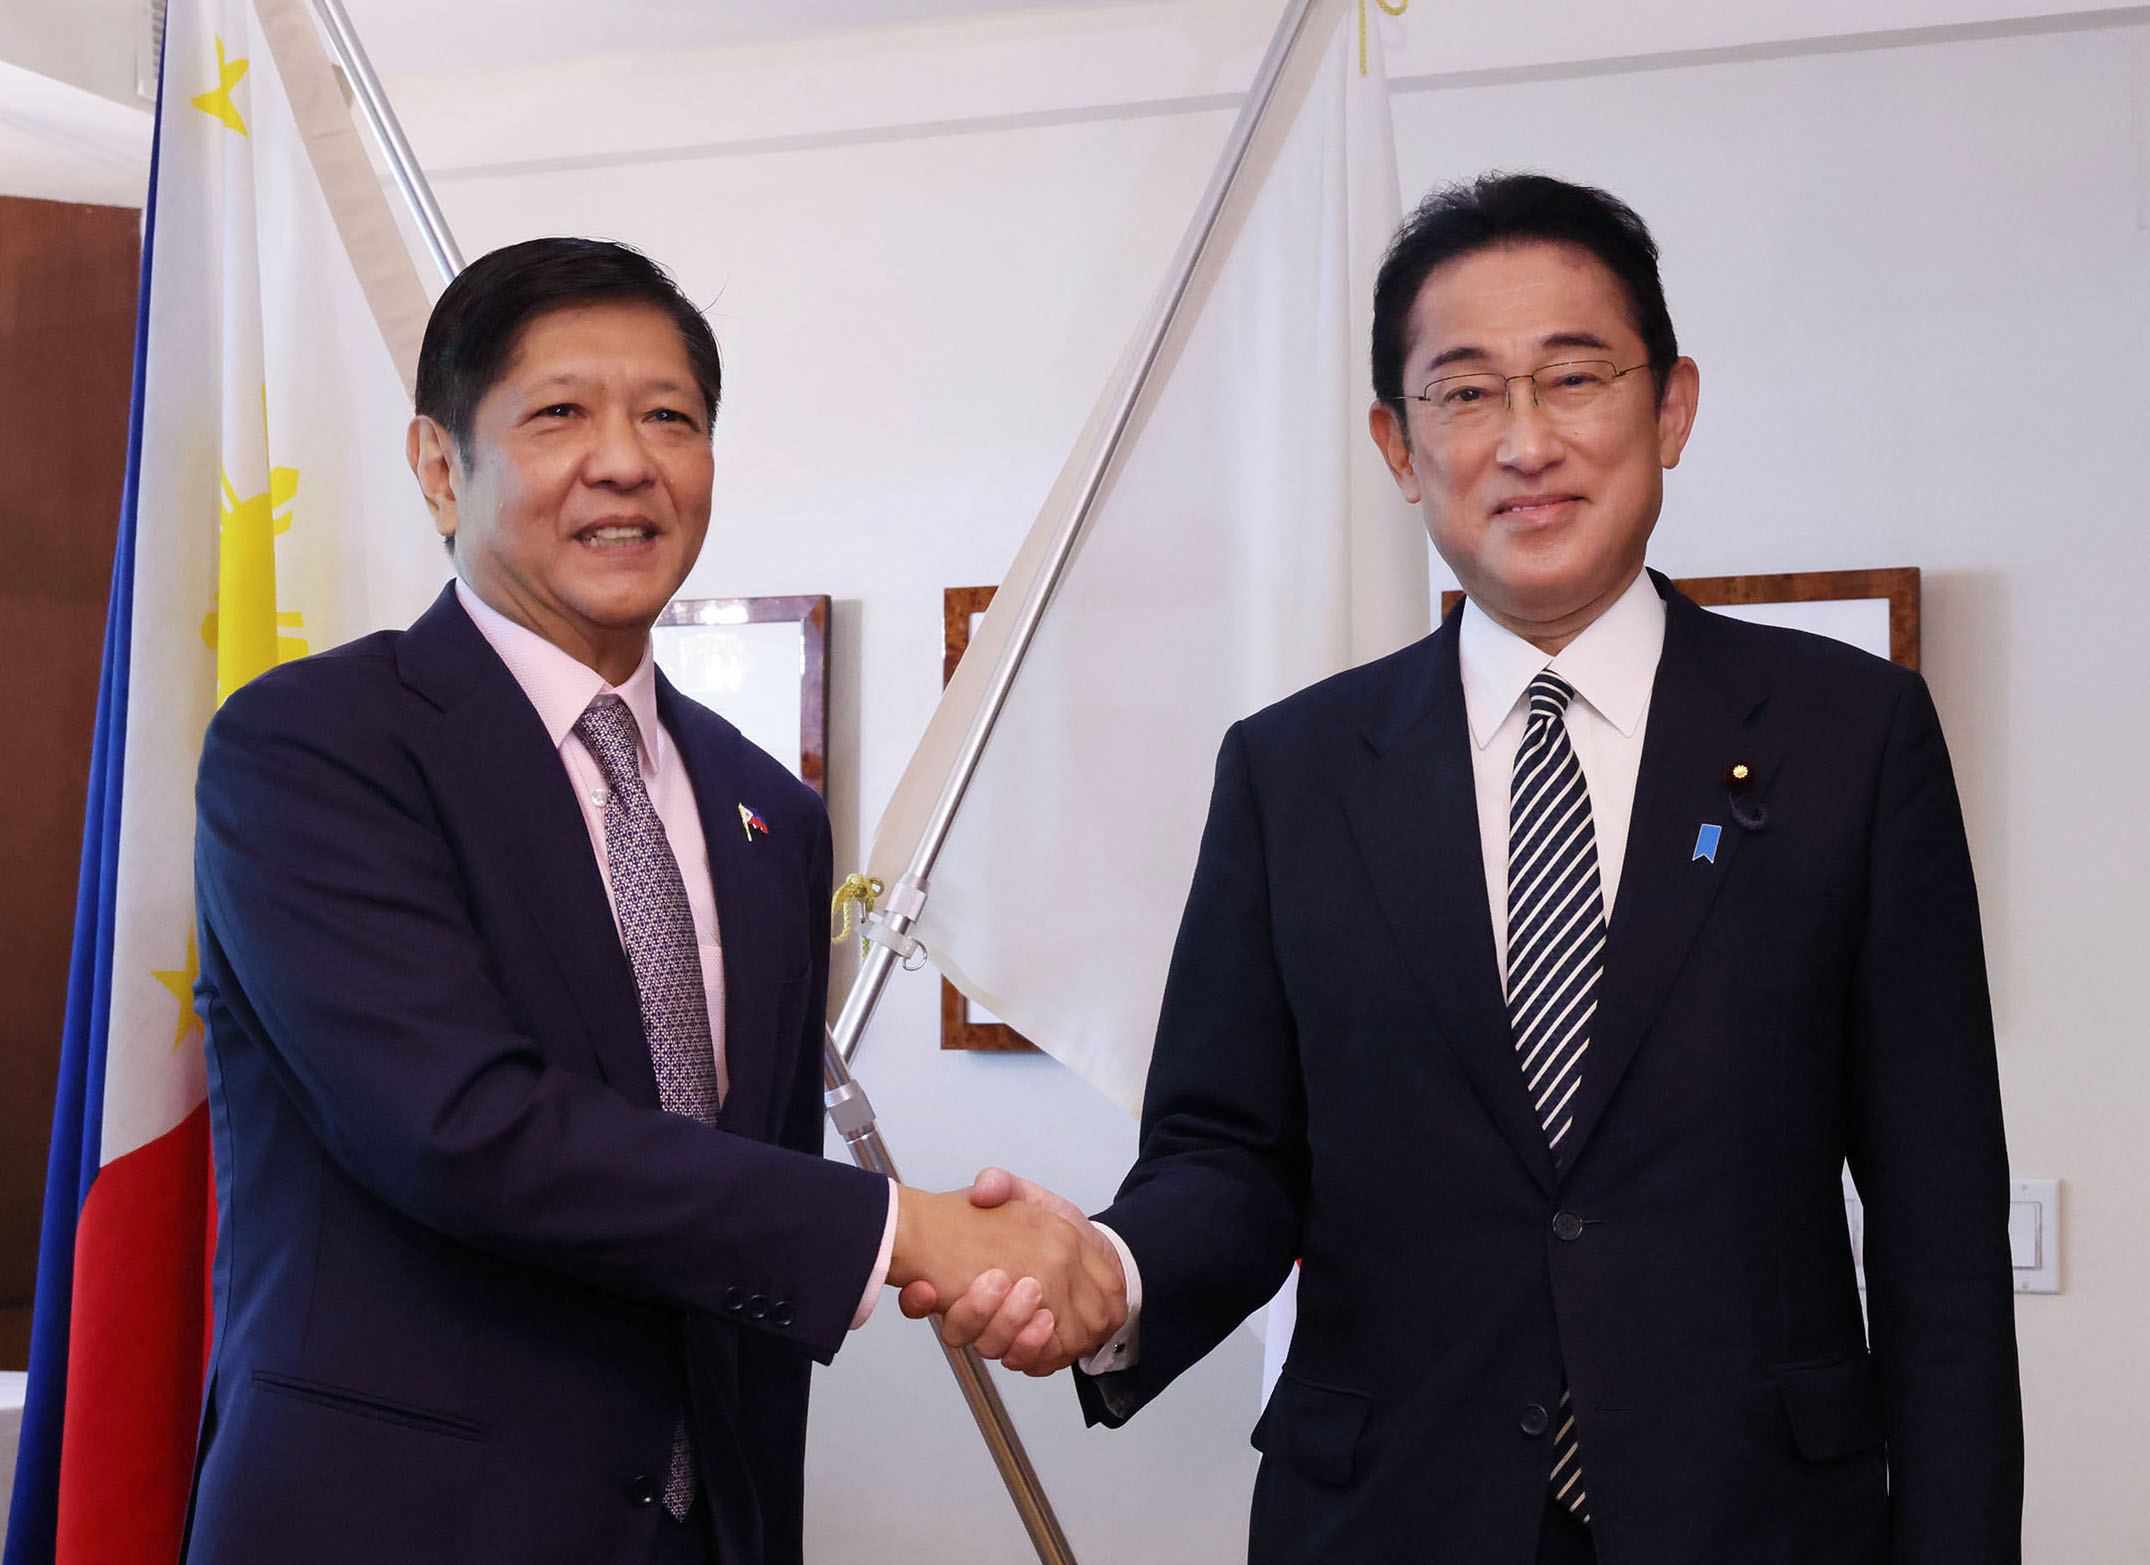 フェルディナンド・マルコス・フィリピン共和国大統領と握手する岸田総理